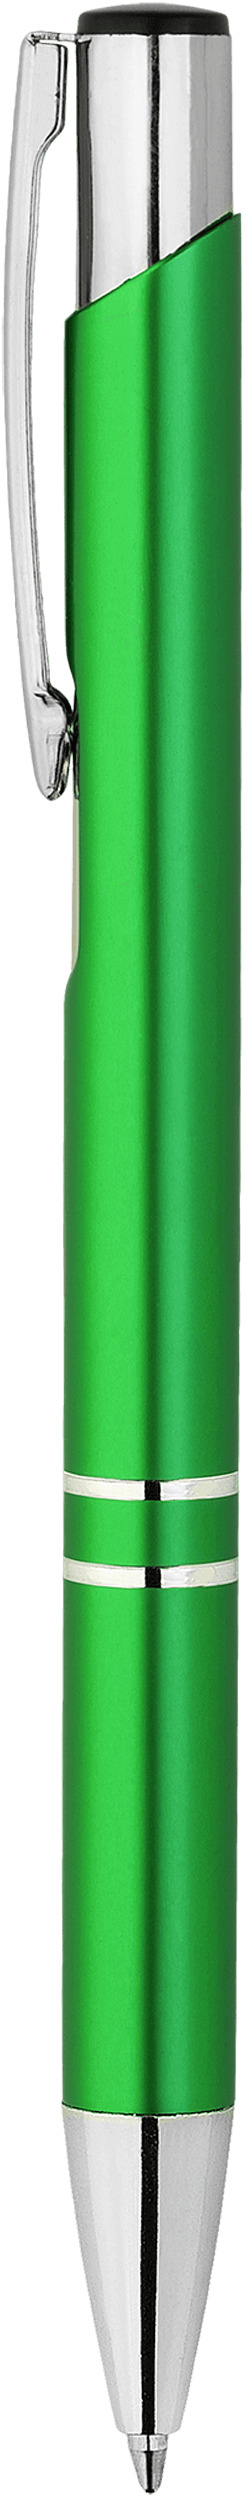 Шариковая ручка Kosko Premium, салатовая, вид сбоку